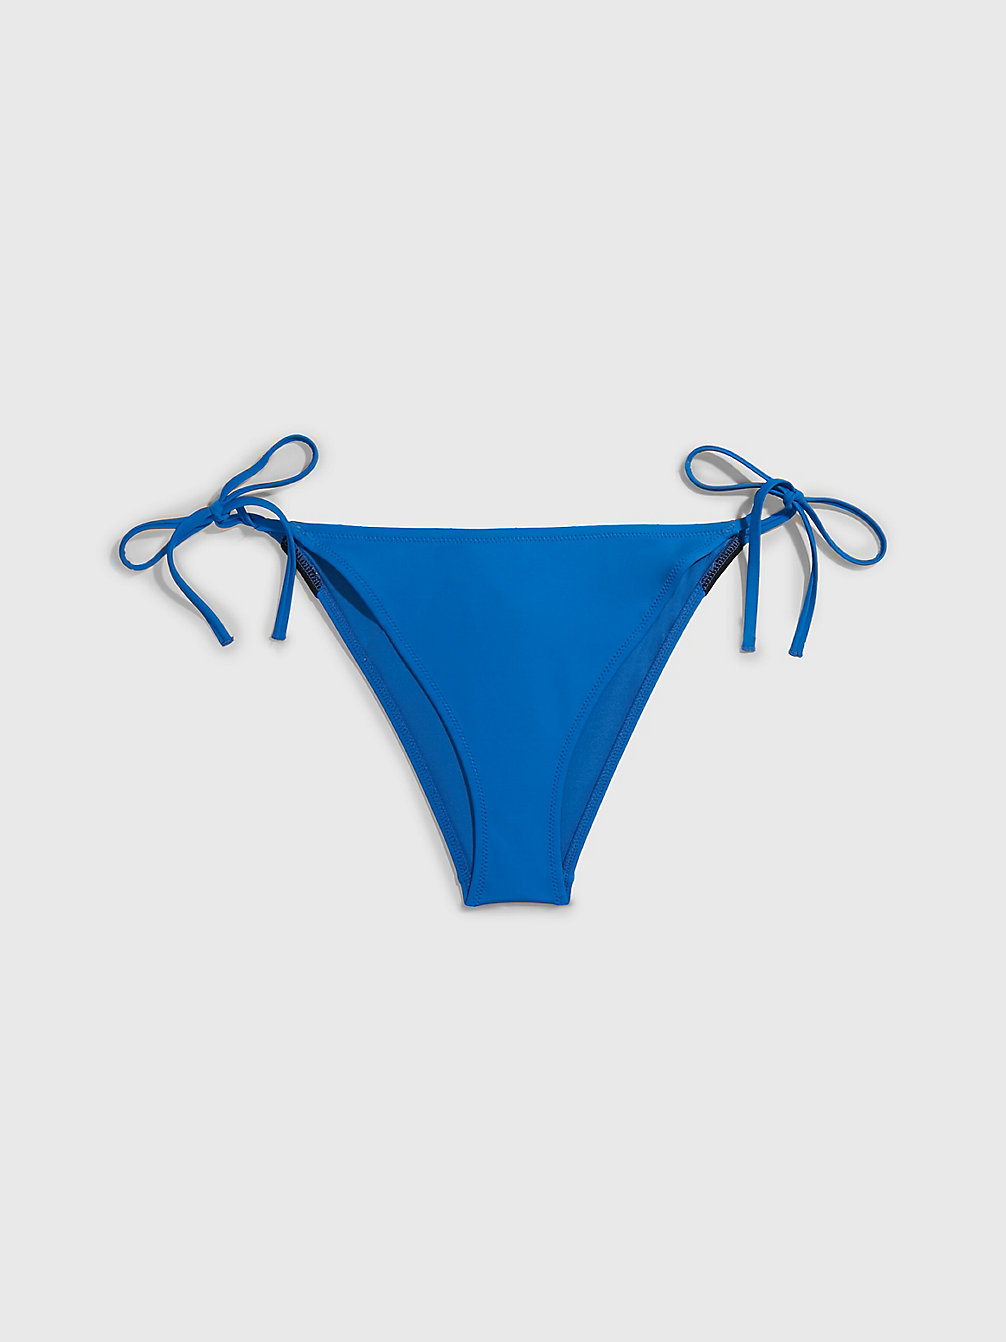 DYNAMIC BLUE > Bikinibroekje Met Strikbandjes - Intense Power > undefined dames - Calvin Klein